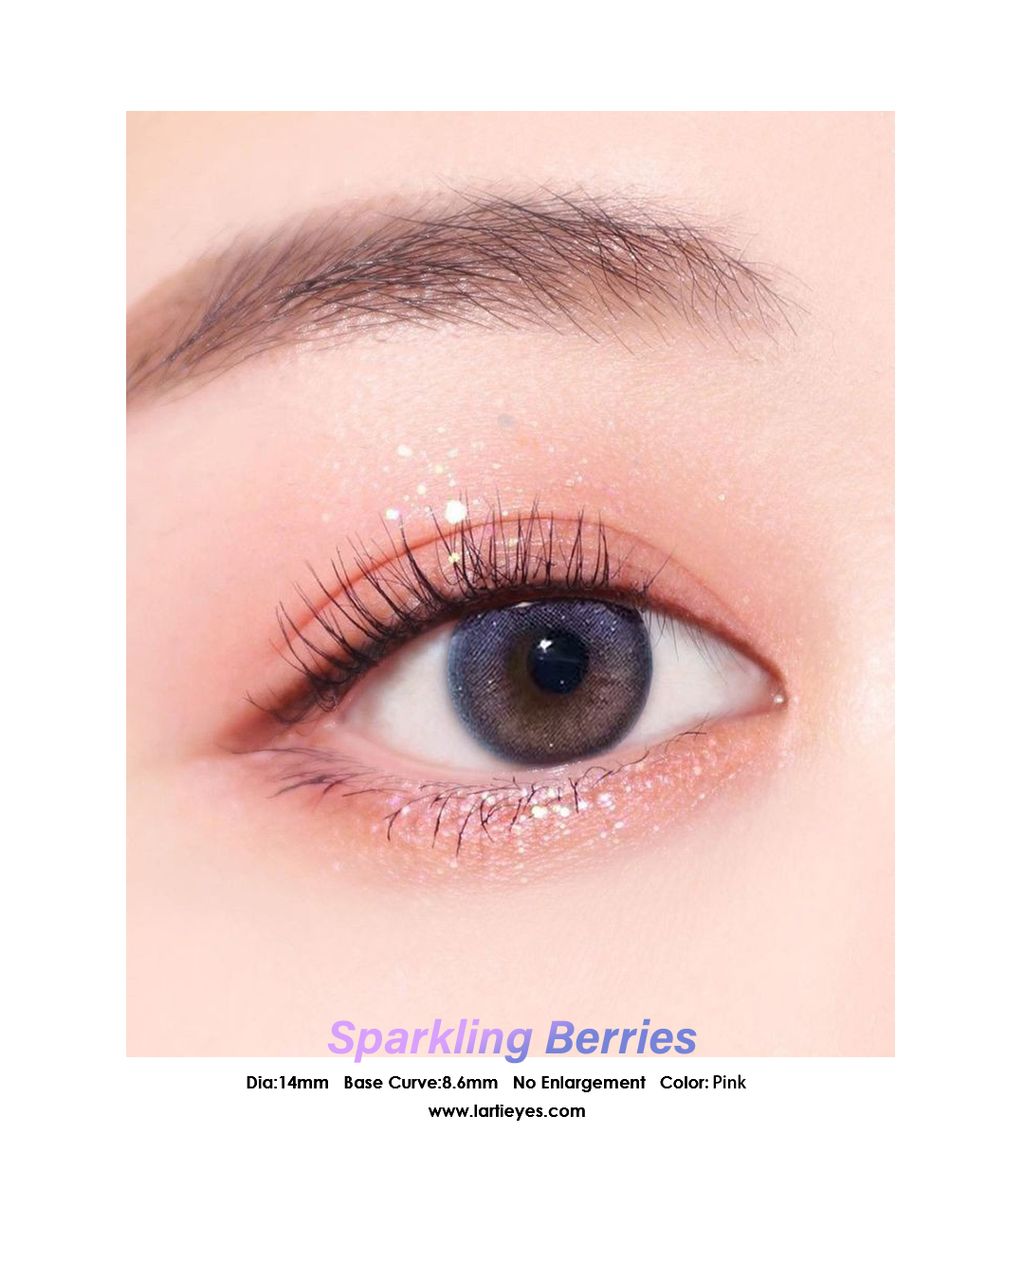 Sparkling Berries Focus eyes